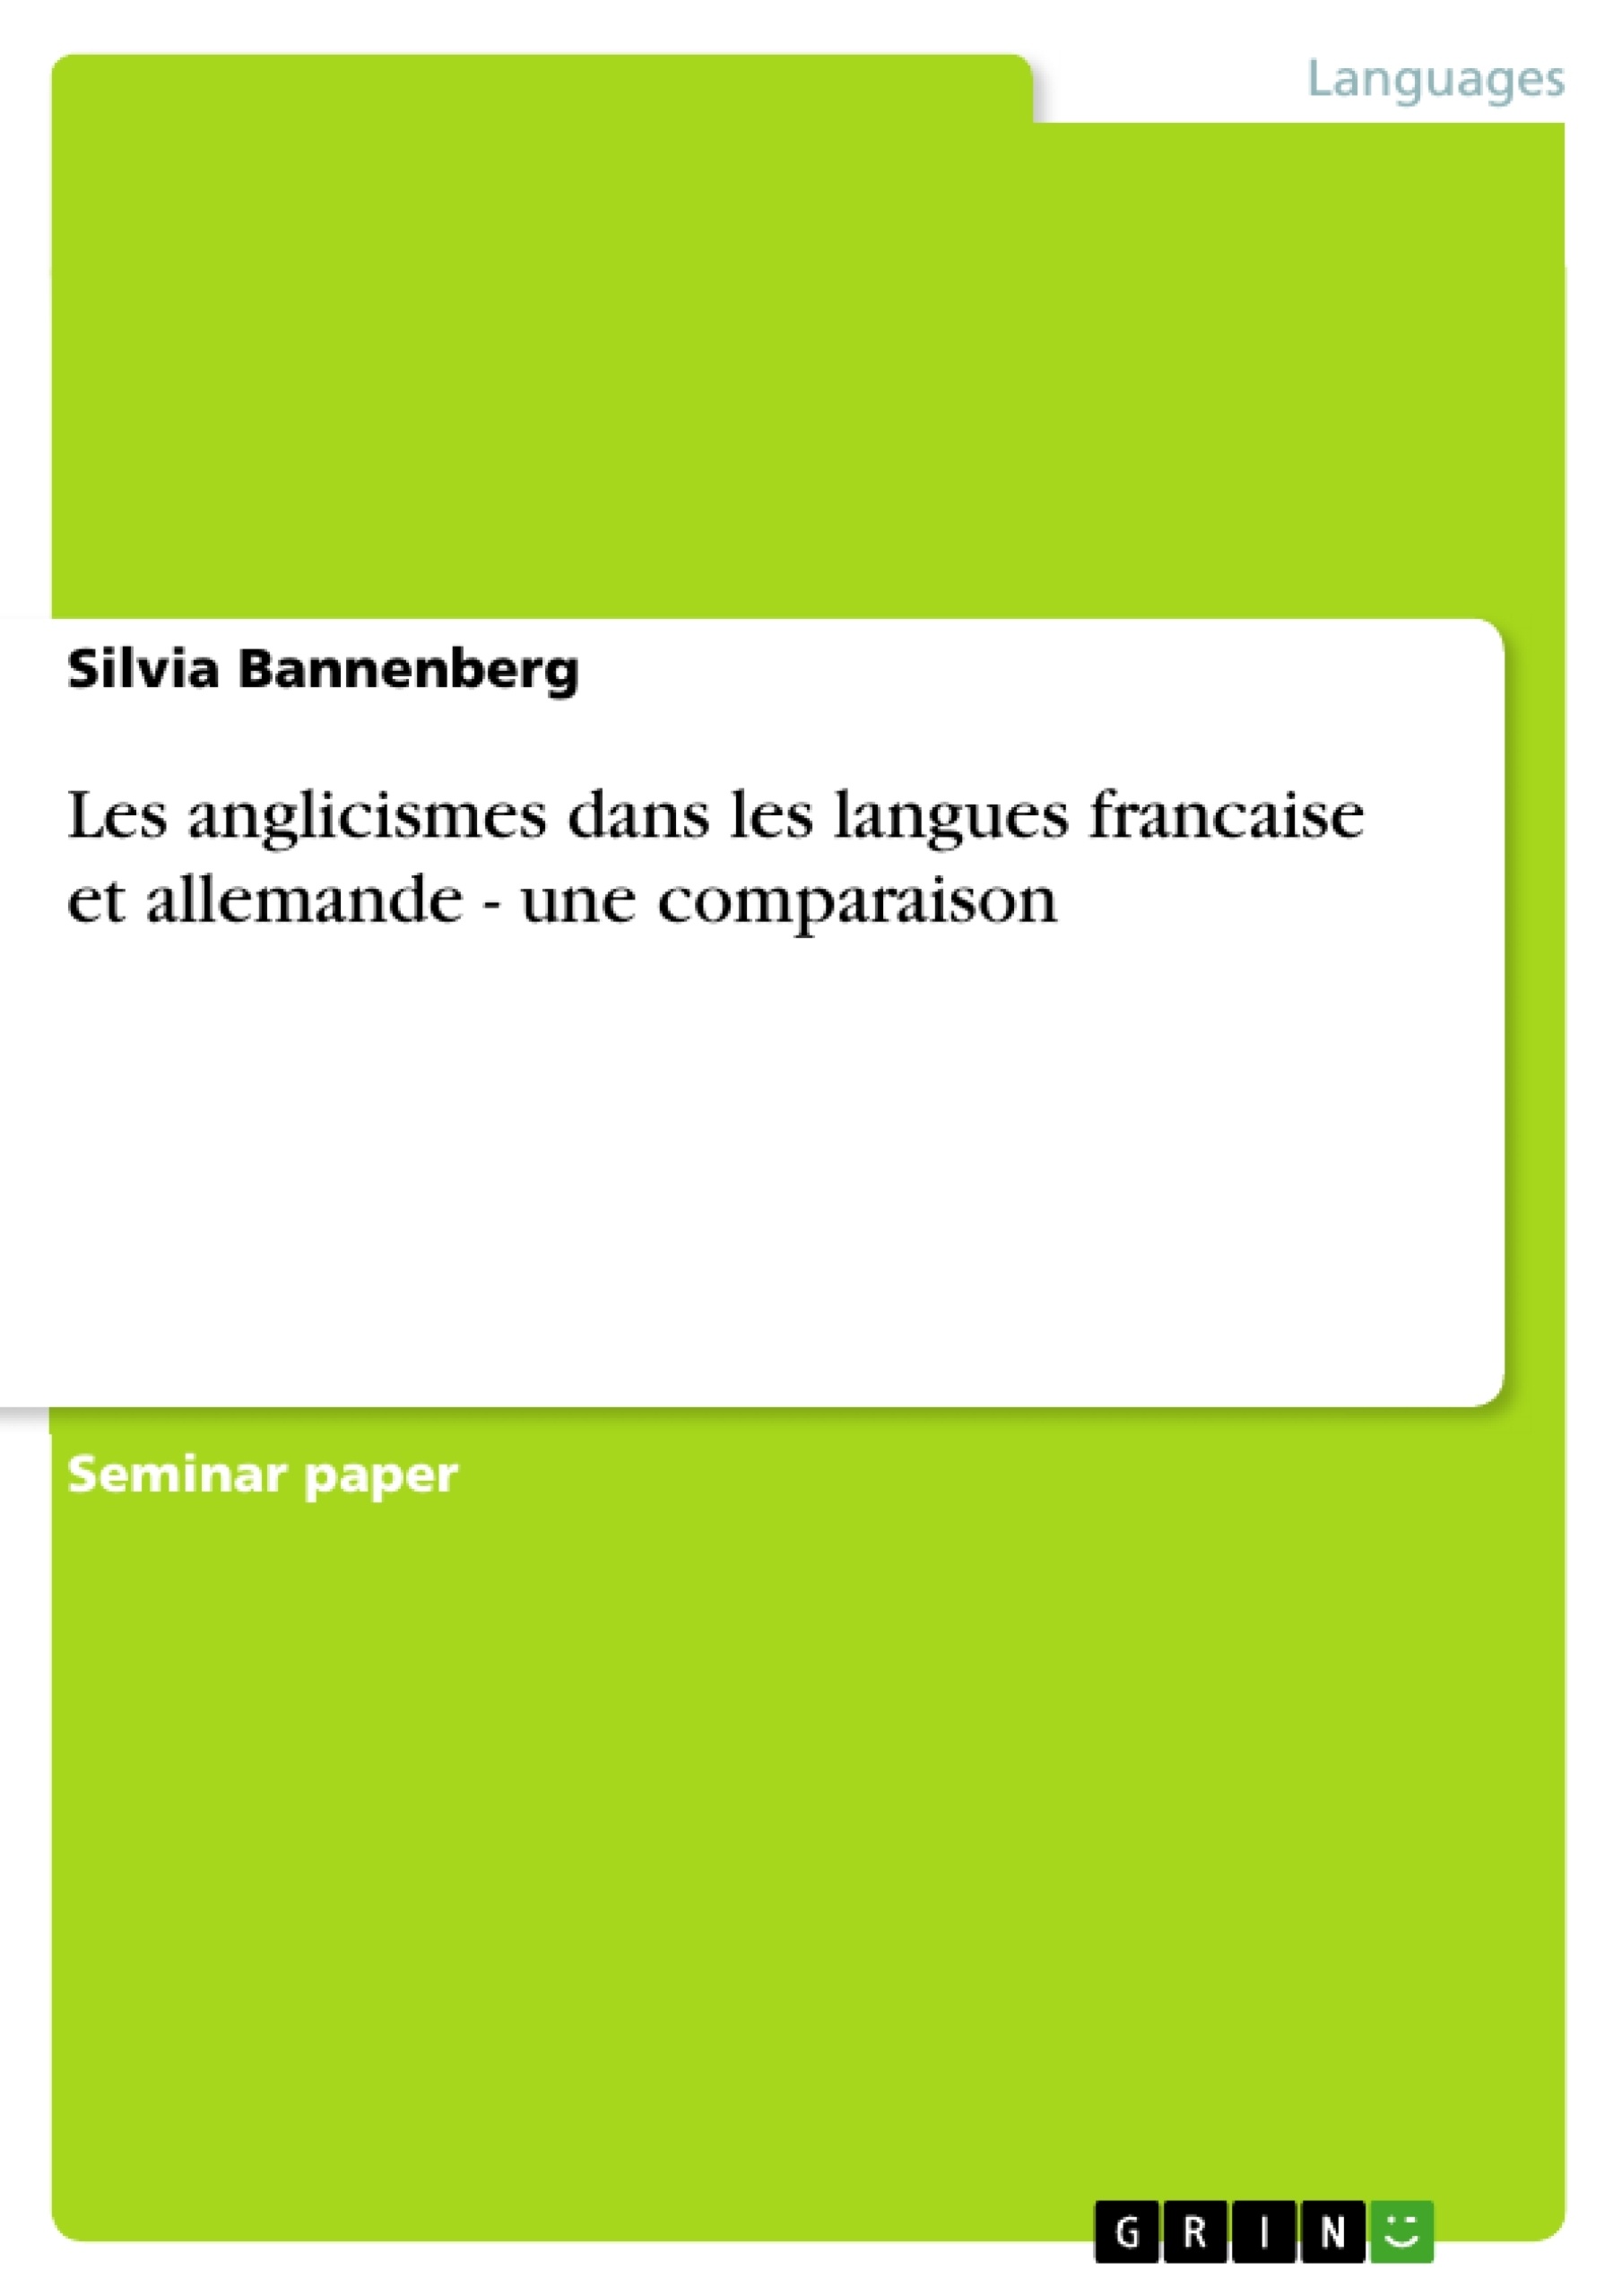 Title: Les anglicismes dans les langues francaise et allemande - une comparaison